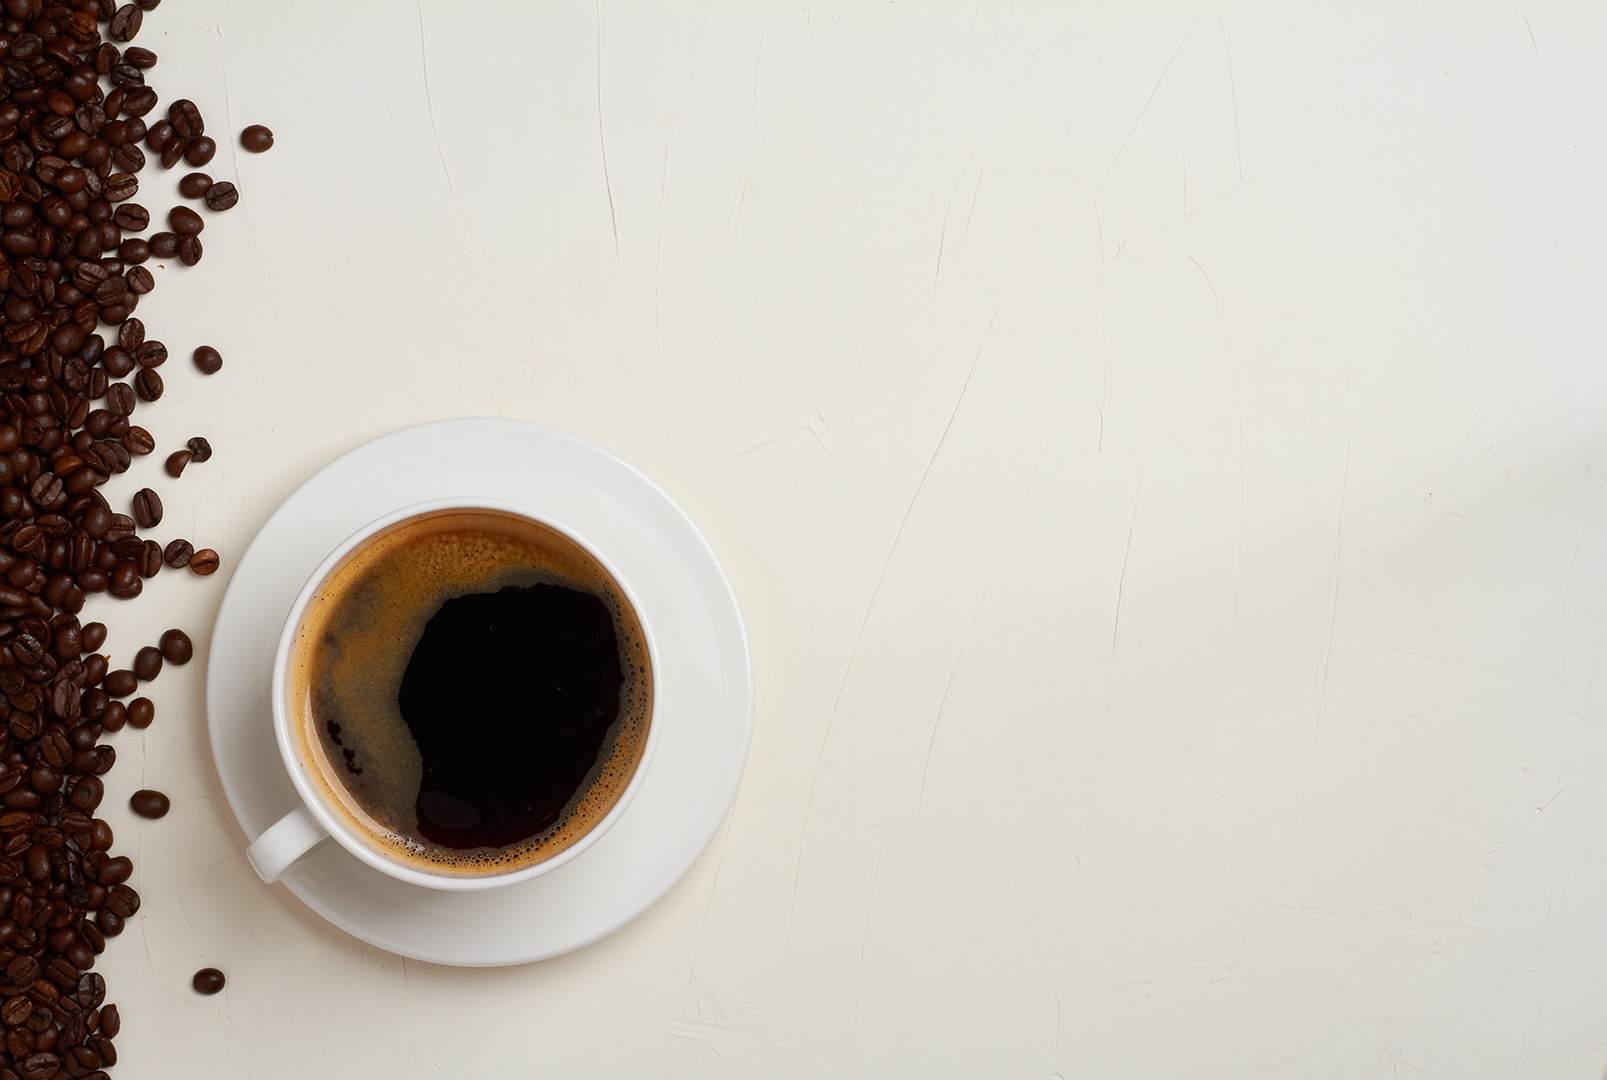 El café podría reducir el riesgo de muerte por derrame cerebral y enfermedad cardíaca5 min read